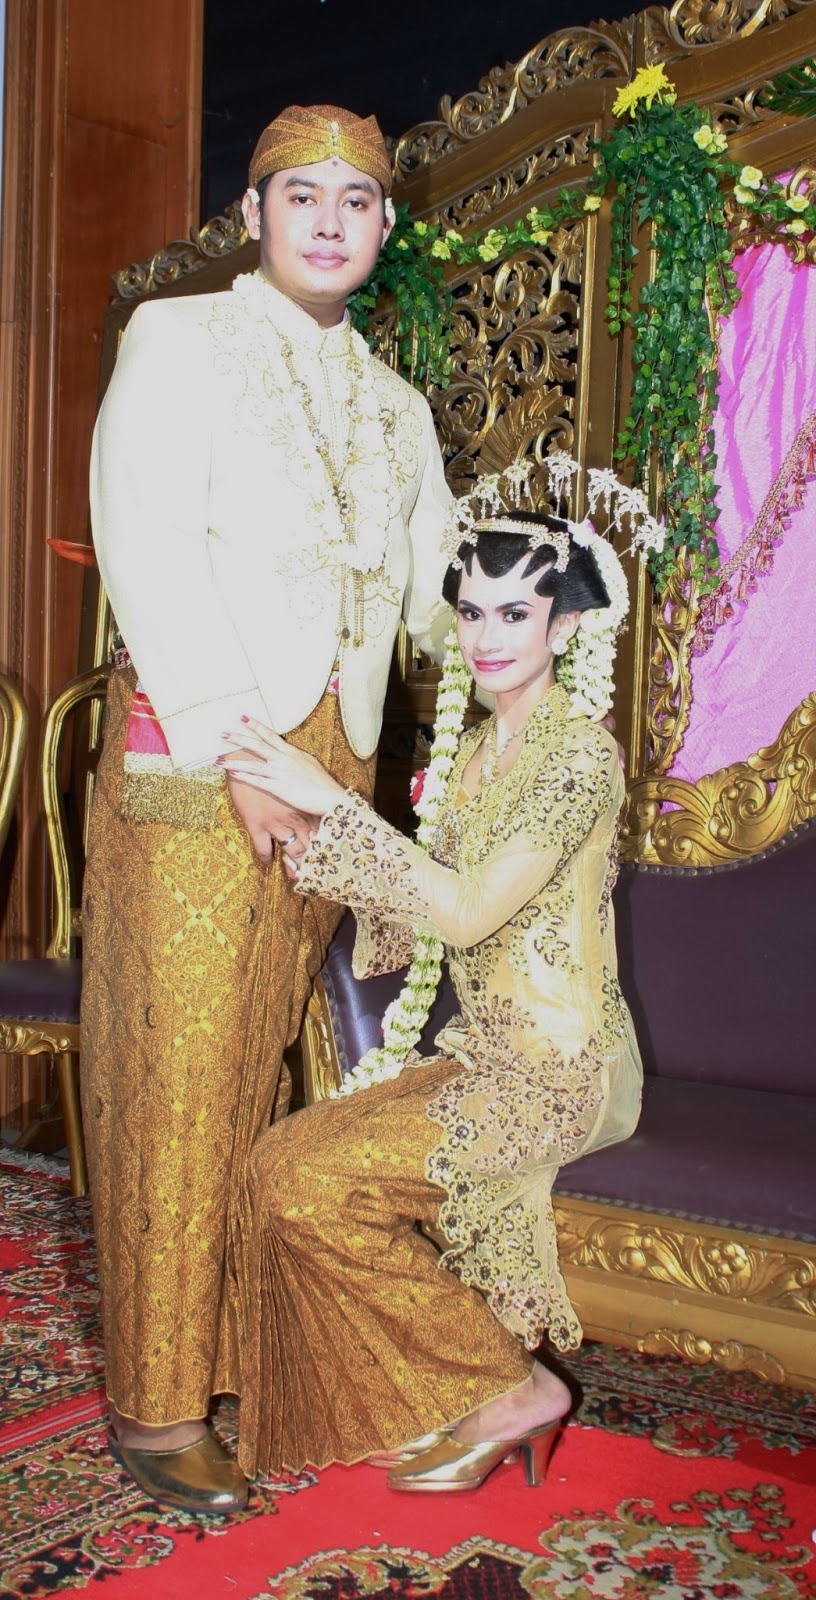 Foto Pernikahan Jawa  Album Wedding